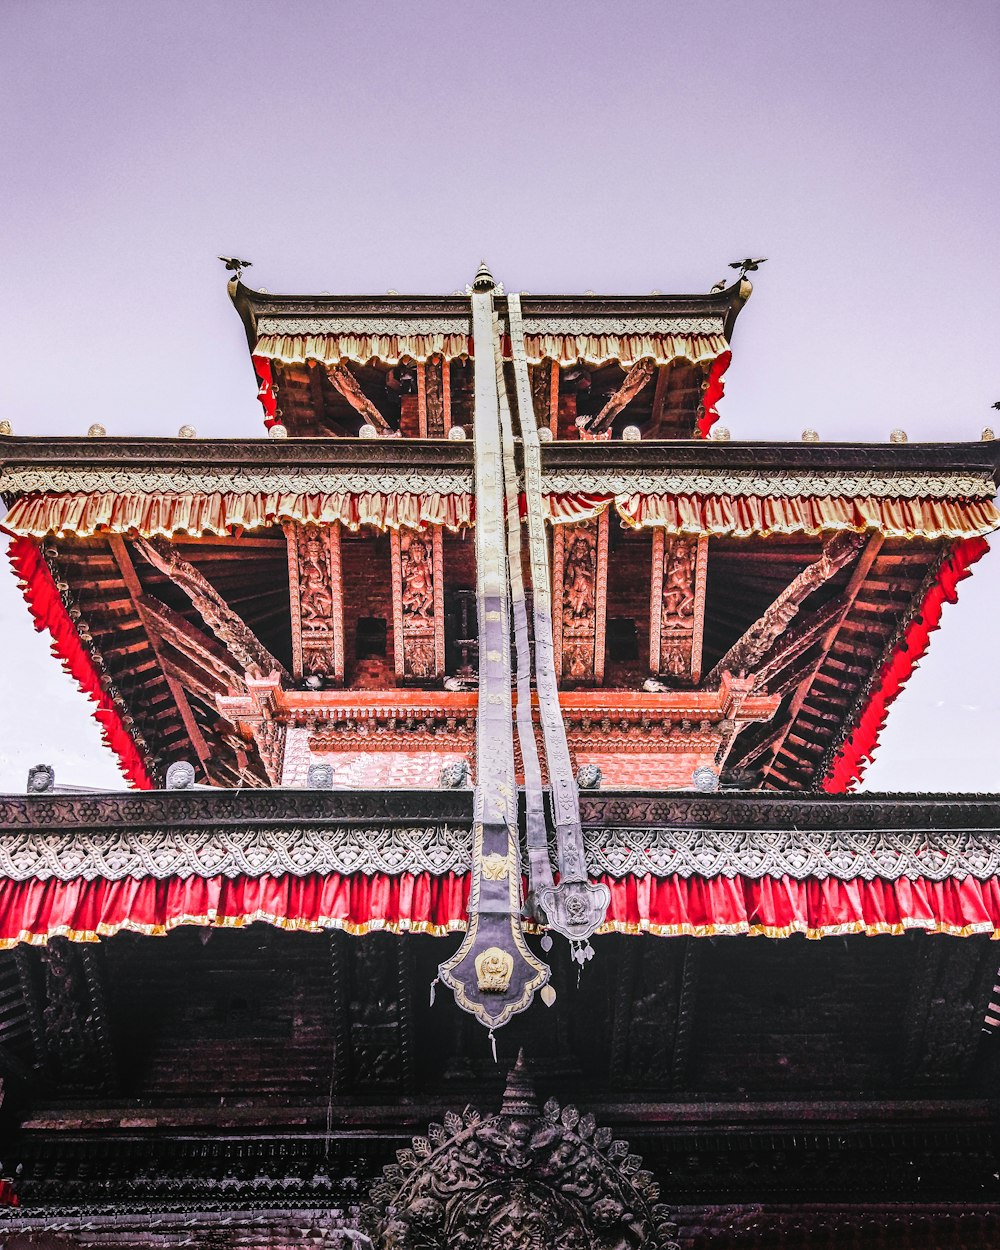 Templo de la pagoda roja y marrón